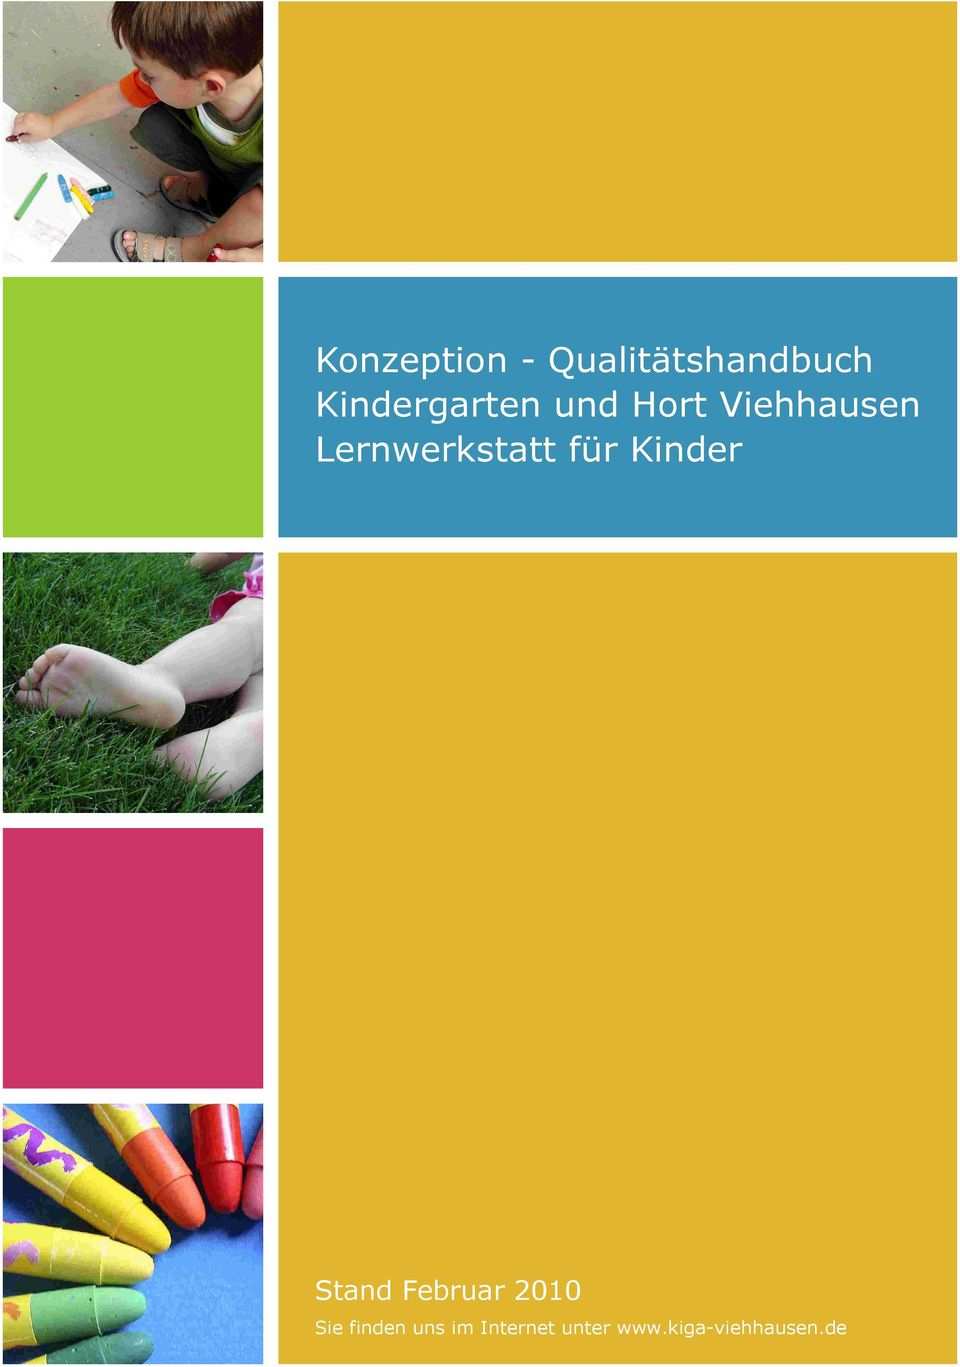 Konzeption Qualitatshandbuch Kindergarten Und Hort Viehhausen Lernwerkstatt Fur Kinder Pdf Free Download